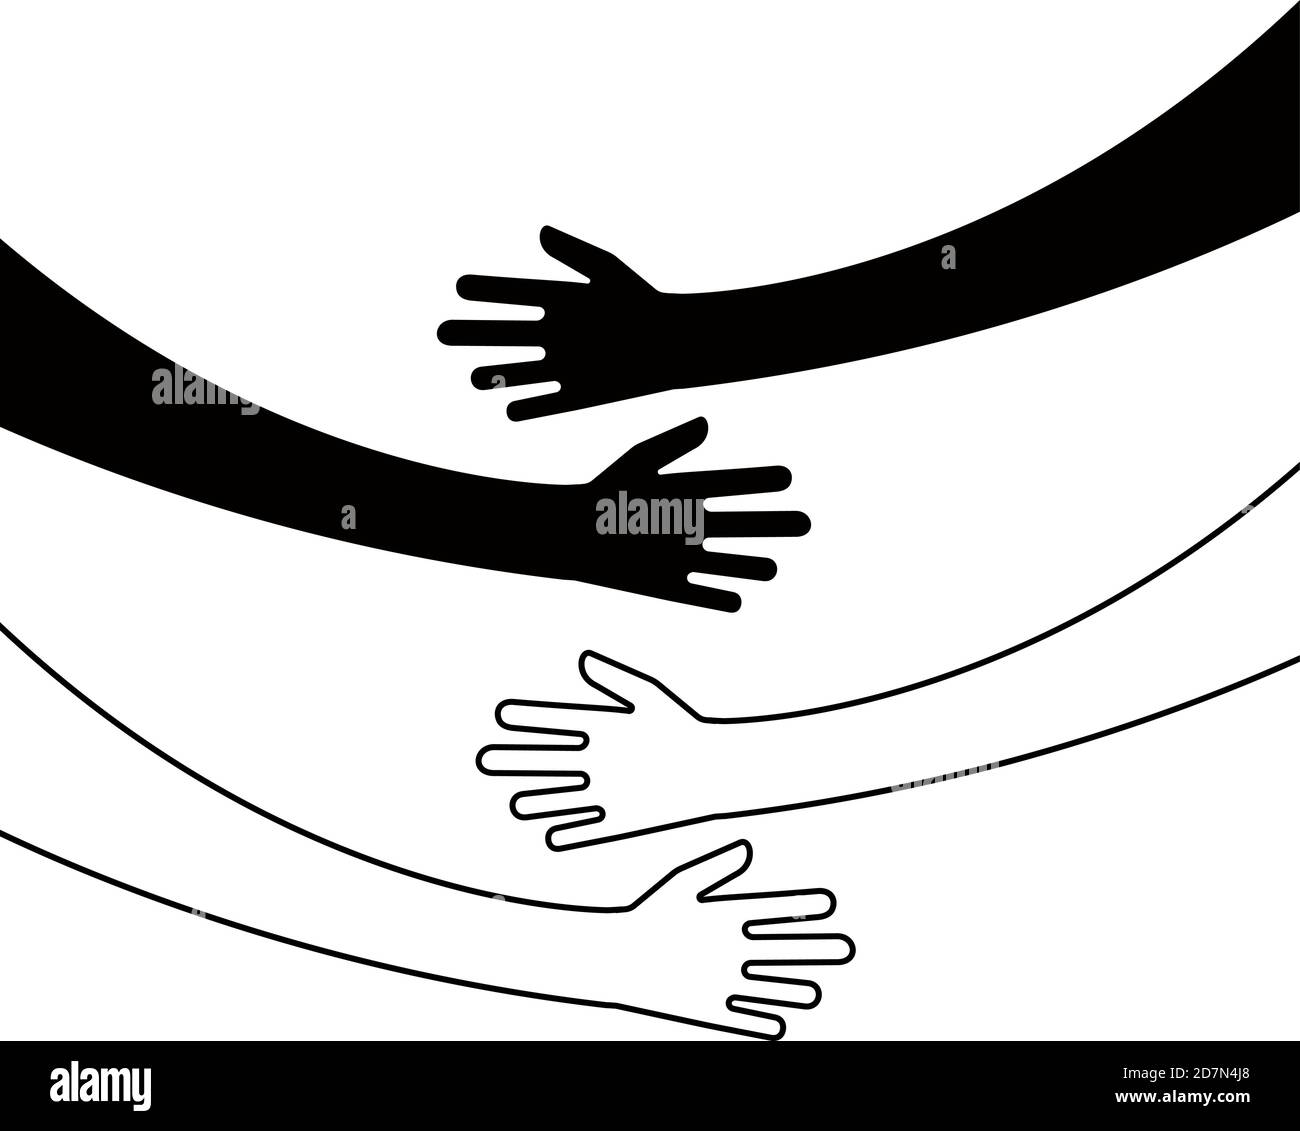 Serrer les mains. Bras embrasser, croyance togetherness unique relation hugged mains vecteur isolé concept. Amour et amitié, relation embrassez l'illustration Illustration de Vecteur